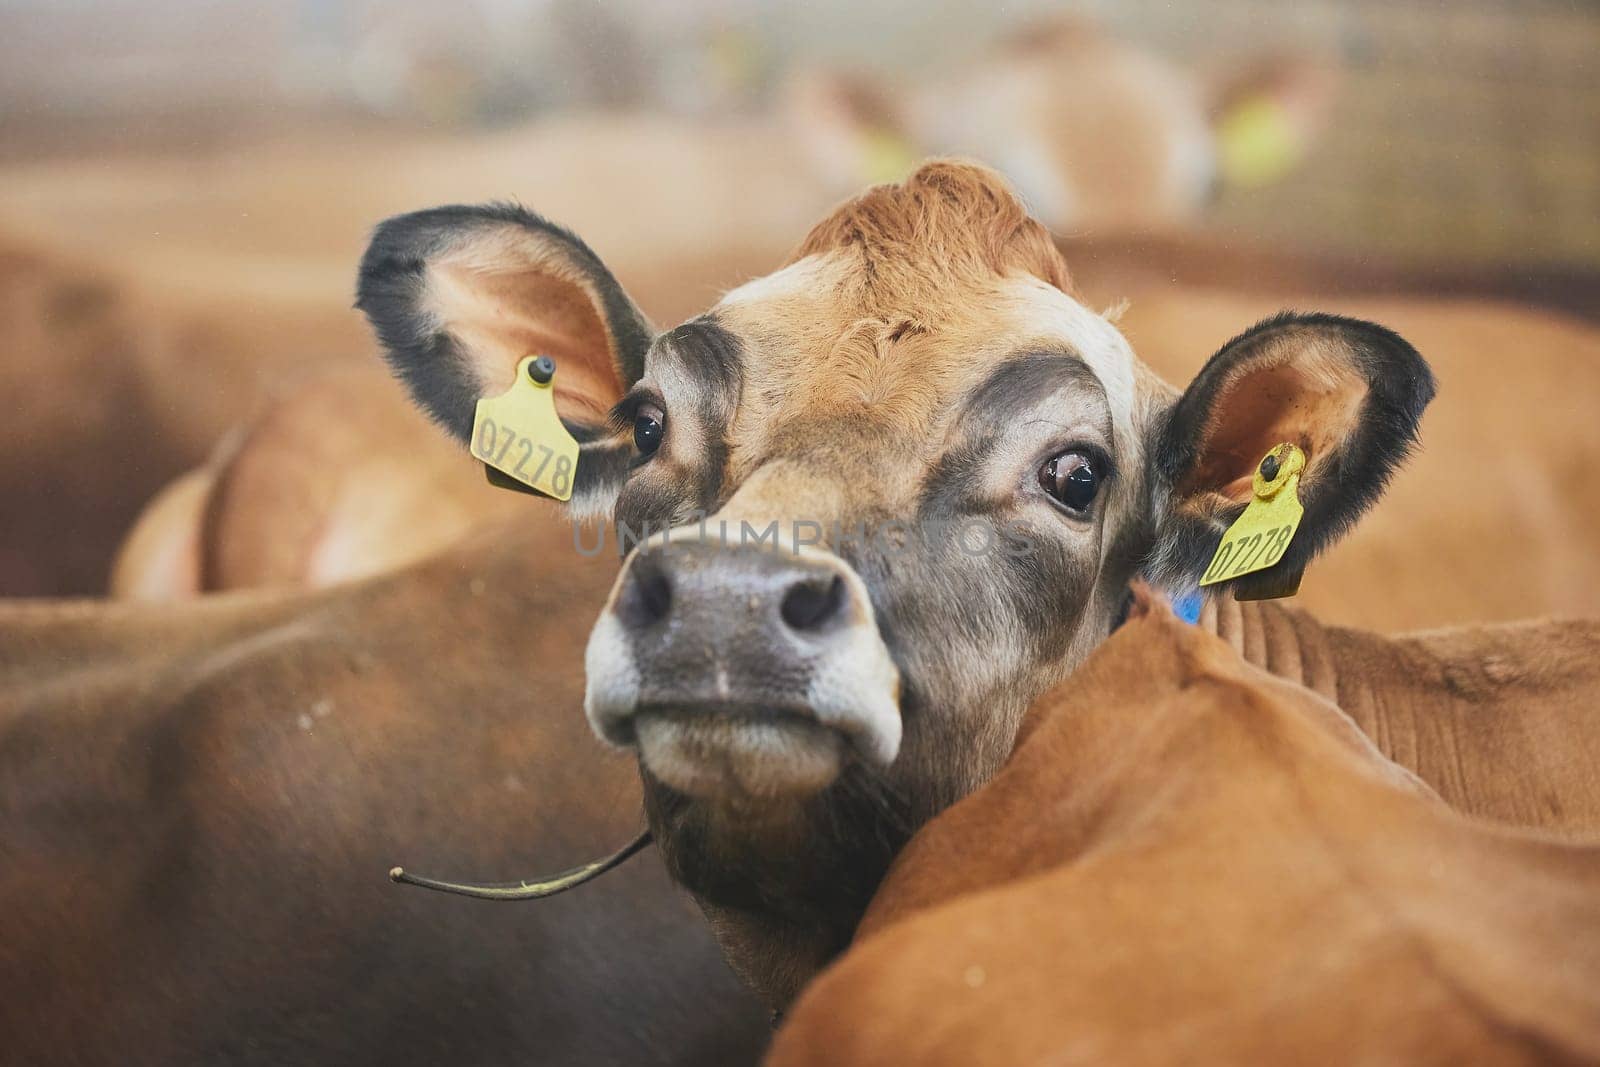 Cute Jersey cow on a modern farm in Denmark.